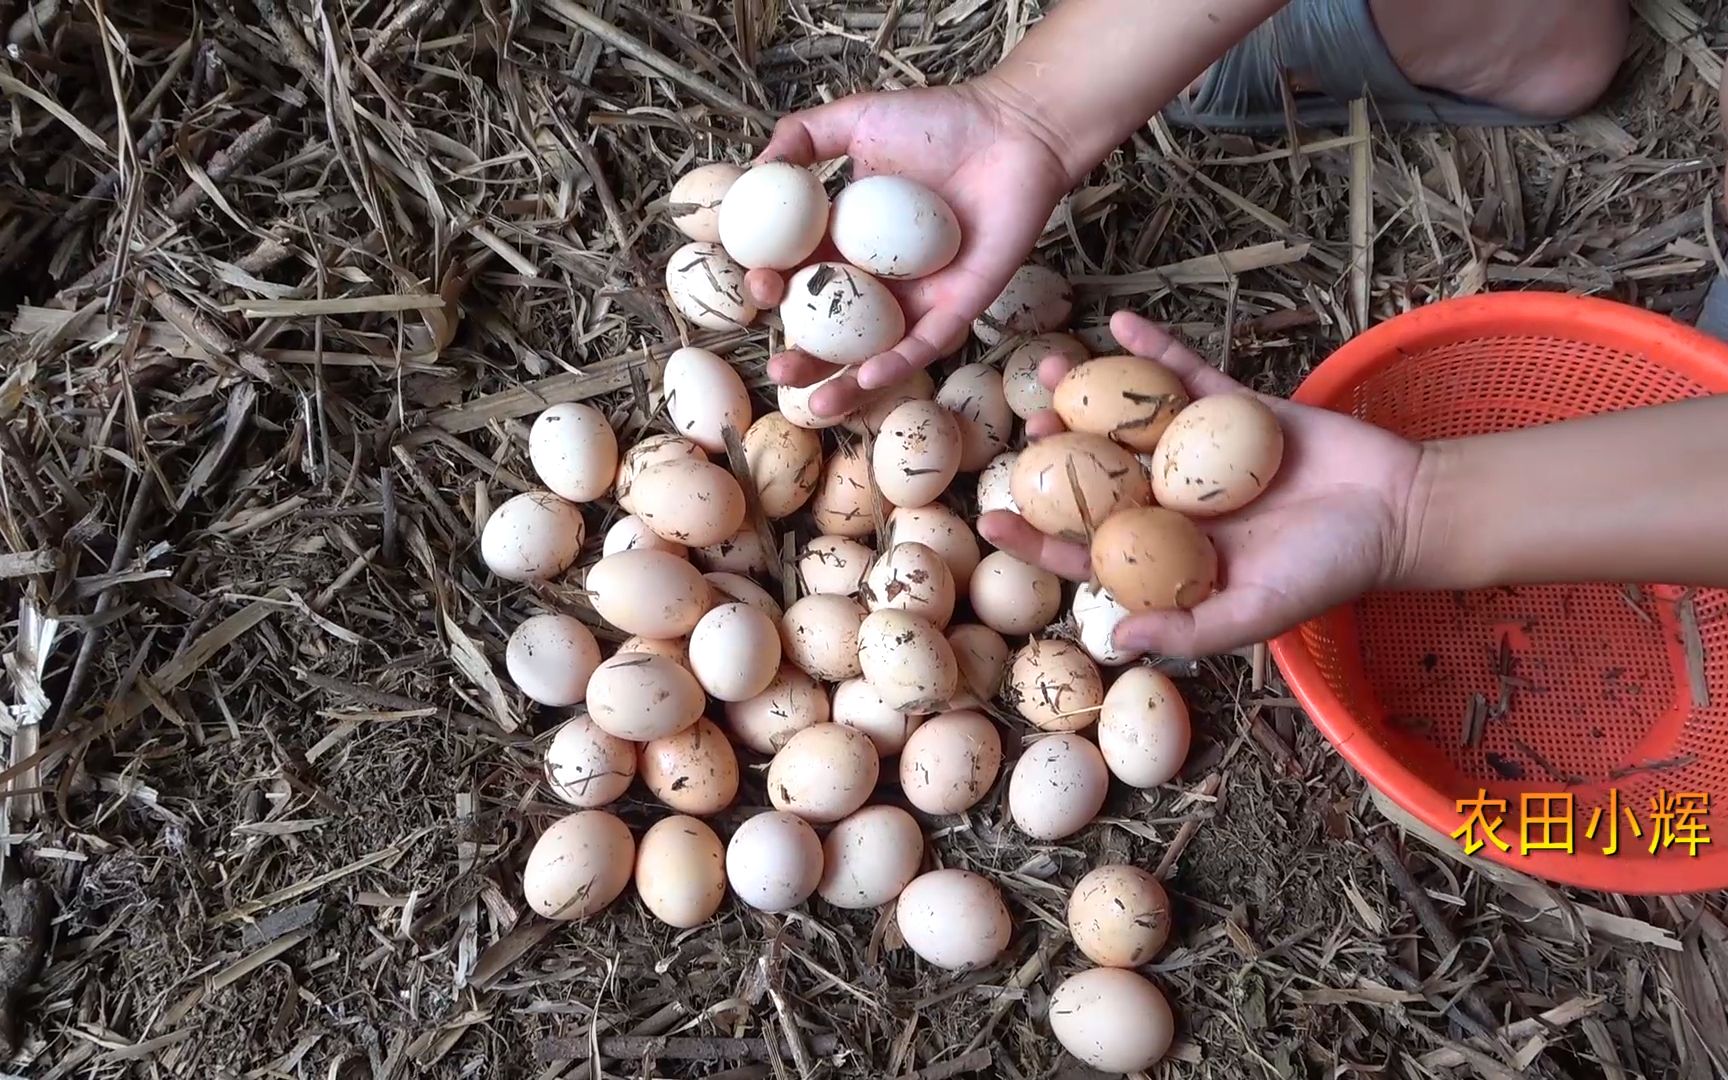 农村婆婆养了20只土鸡,小伙去野外捡鸡蛋,没想到有意外收获